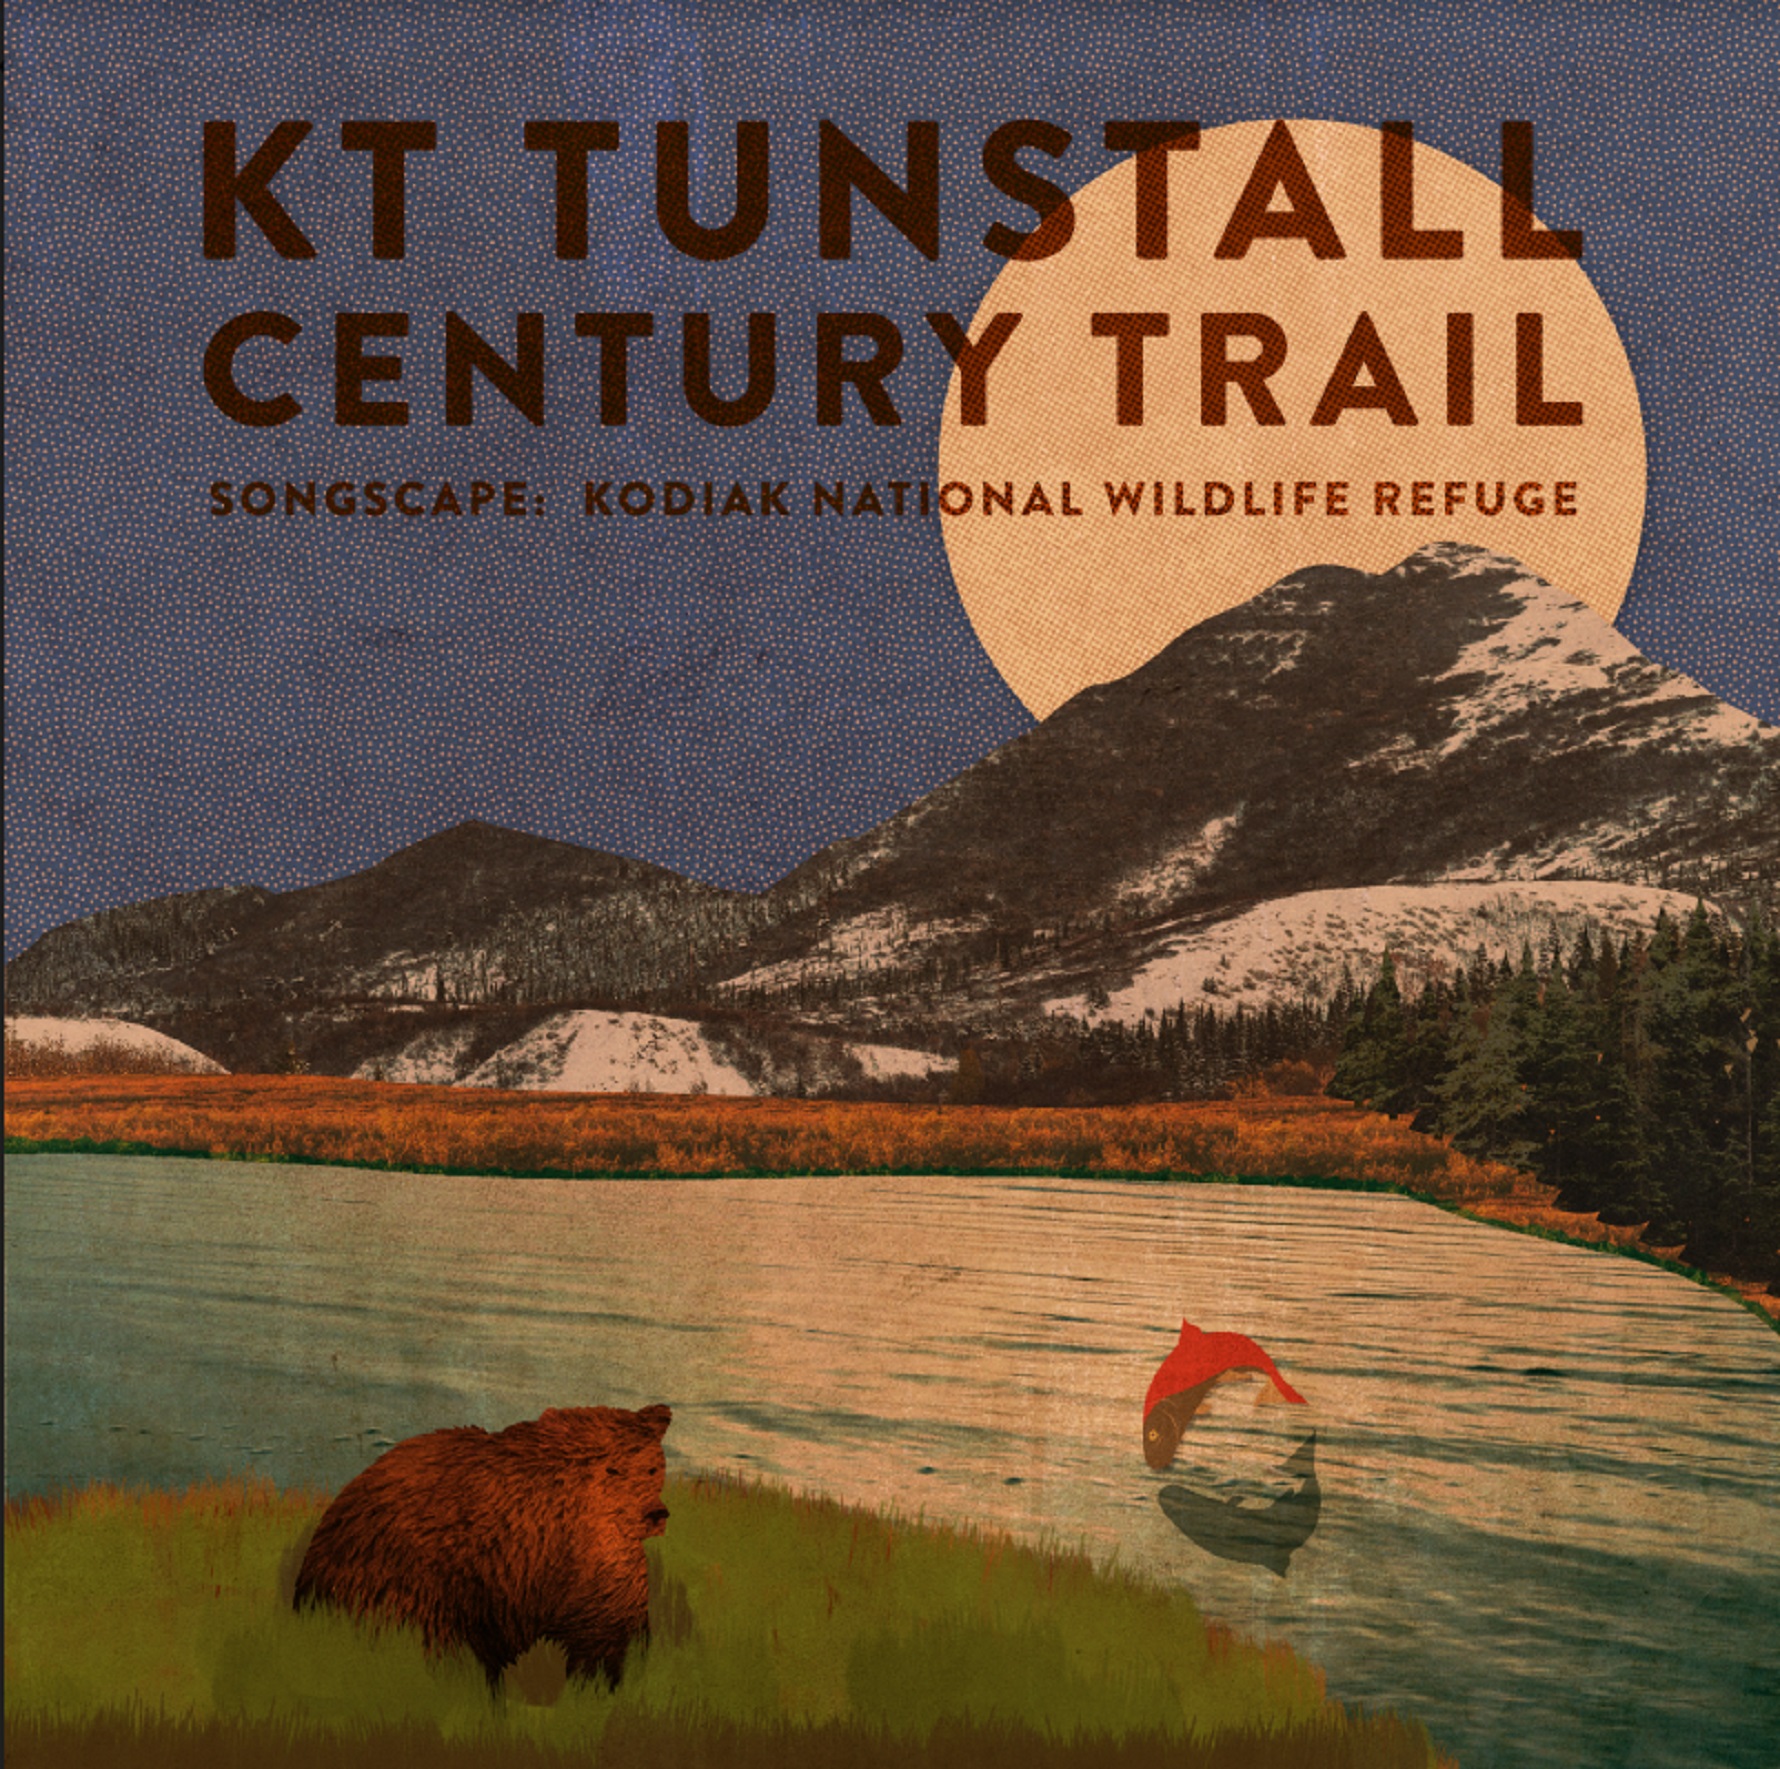 KT Tunstall Sings Amongst the Brown Bears of Kodiak National Wildlife Refuge in New Music Video